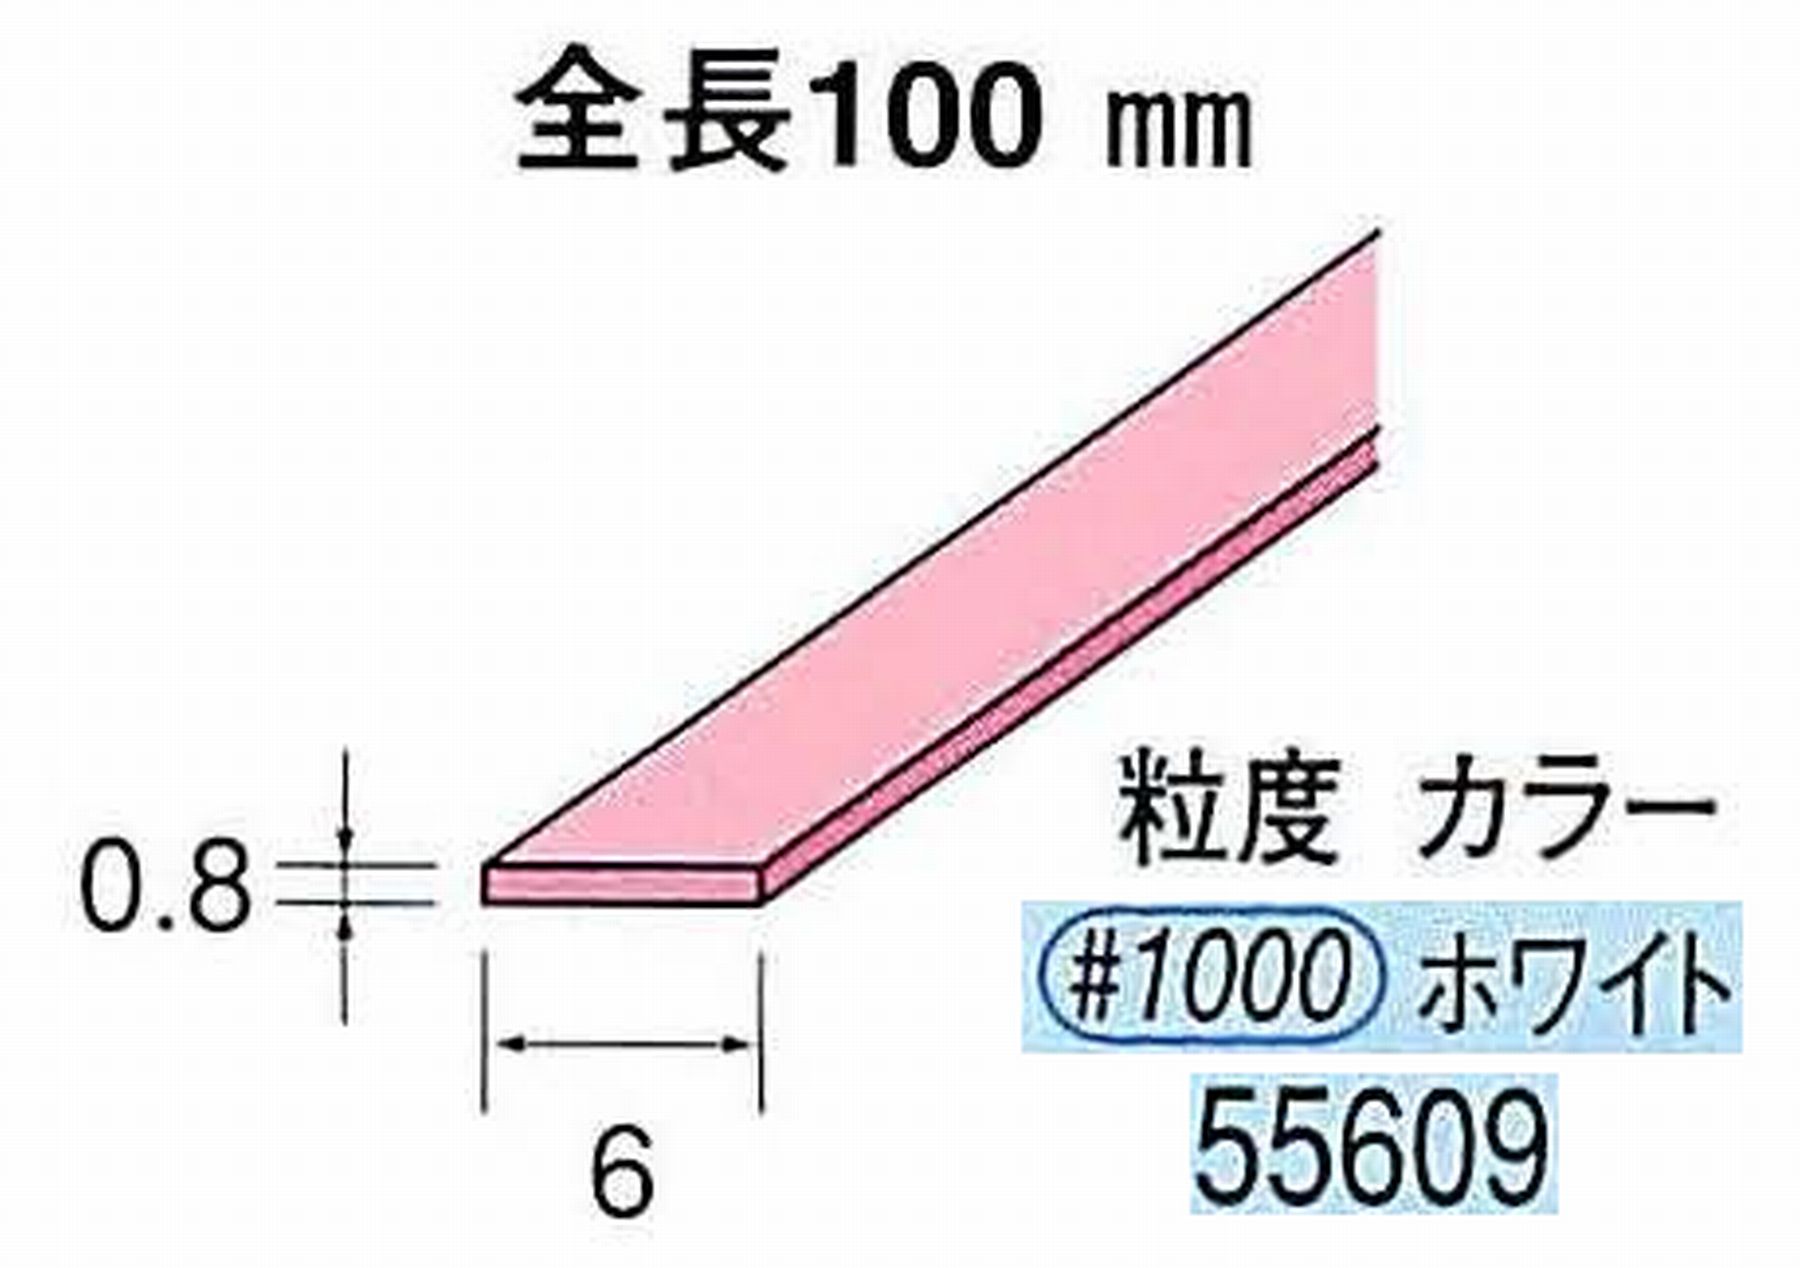 ナカニシ/NAKANISHI セラファイバー砥石 全長100mm ホワイト 55609